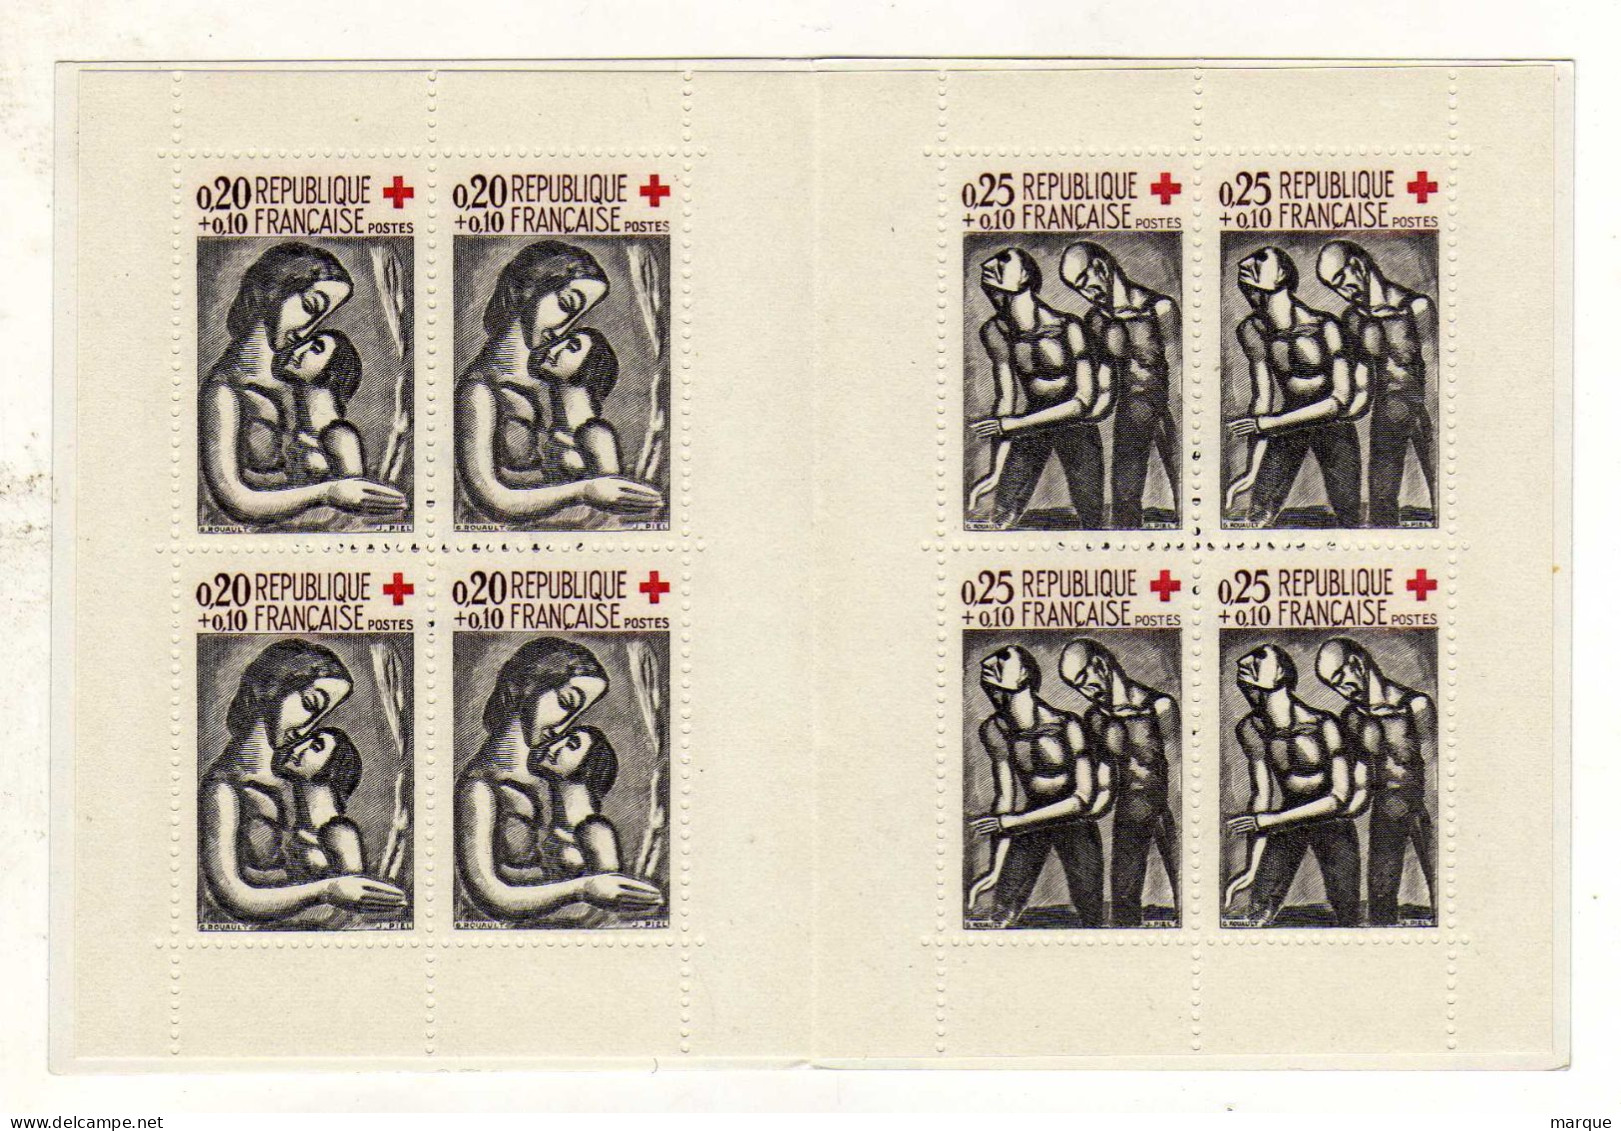 Carnet FRANCE Croix Rouge De 8 Timbres Année 1961 Neuf Xx - Rotes Kreuz